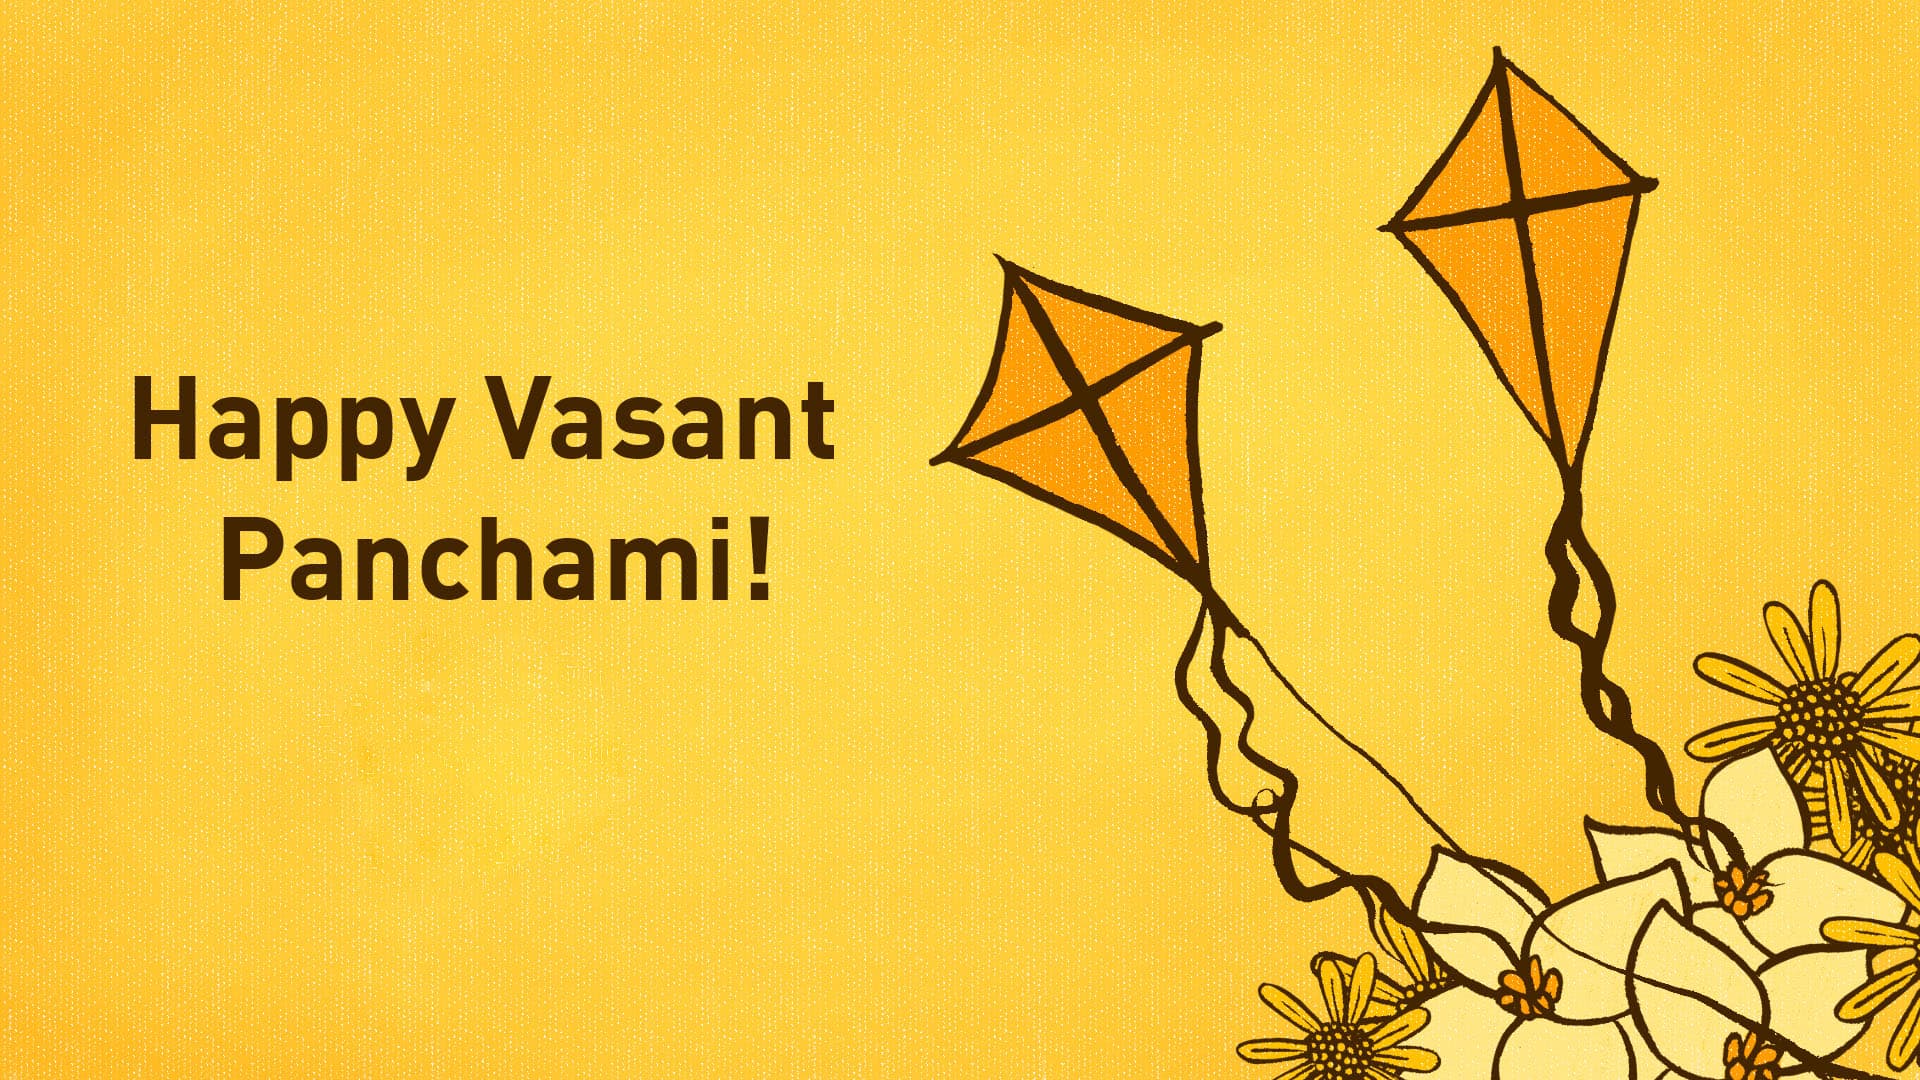 Happy Basant Panchami Images